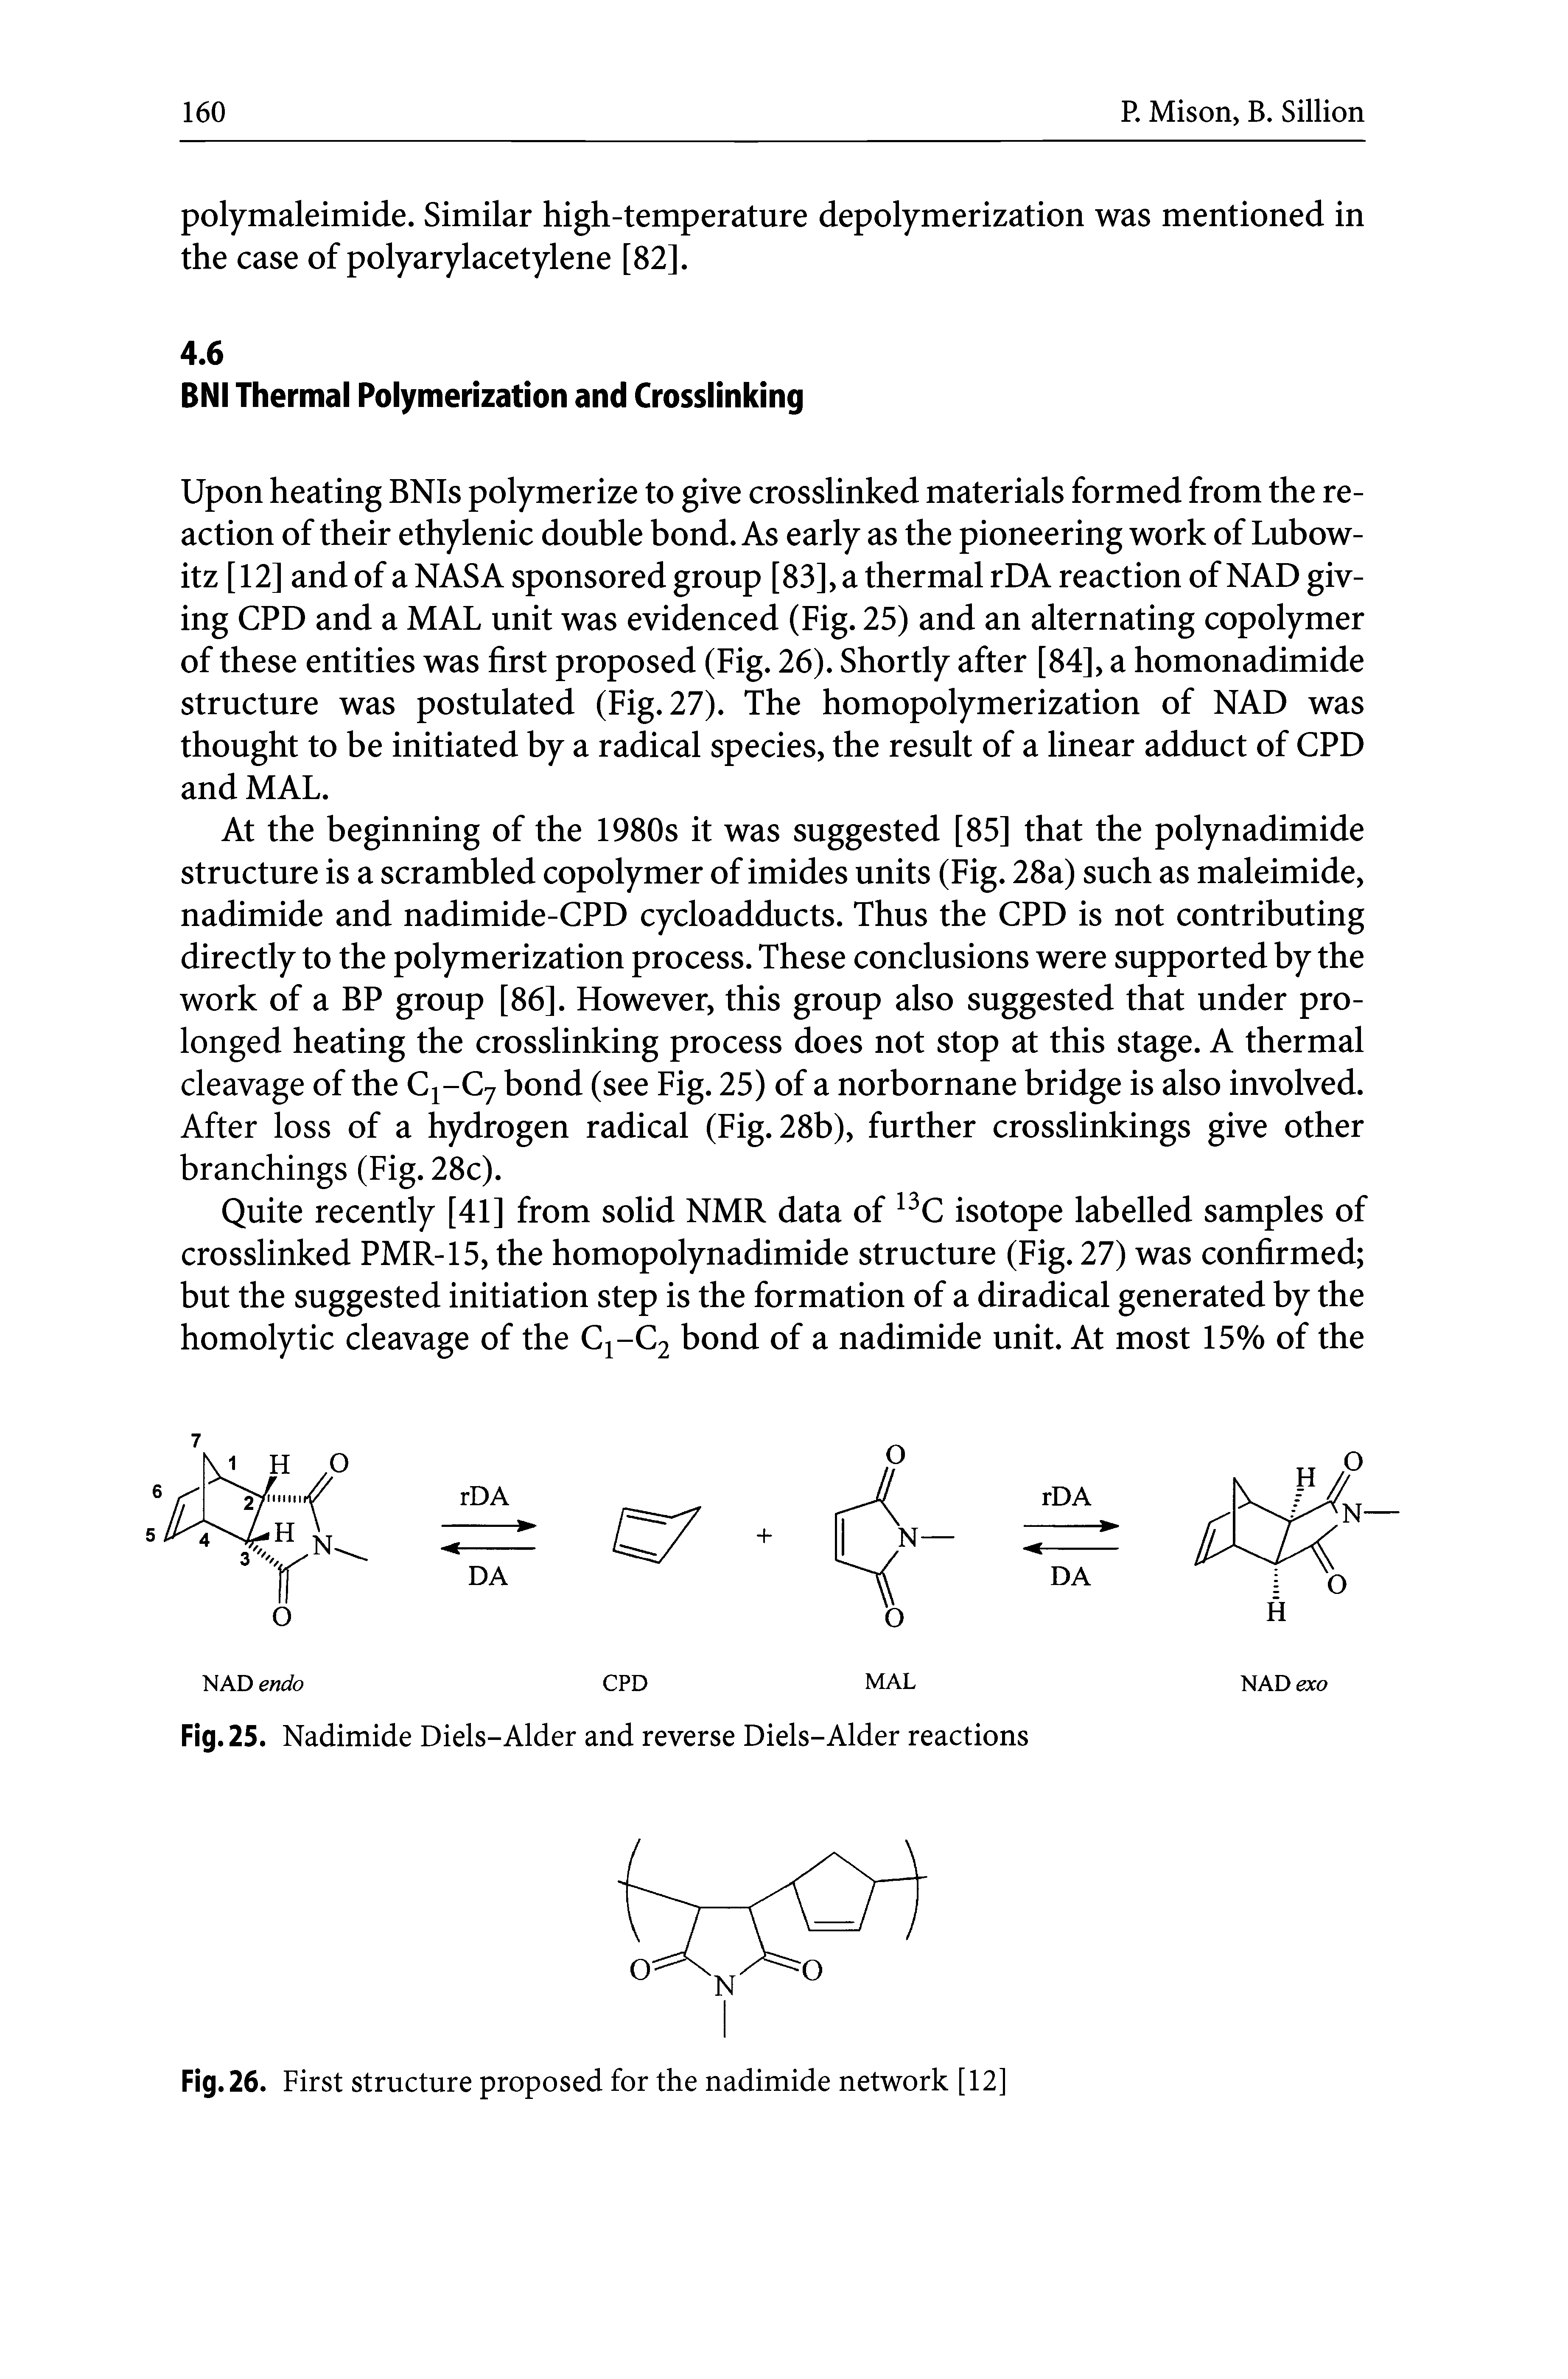 Fig. 25. Nadimide Diels-Alder and reverse Diels-Alder reactions...